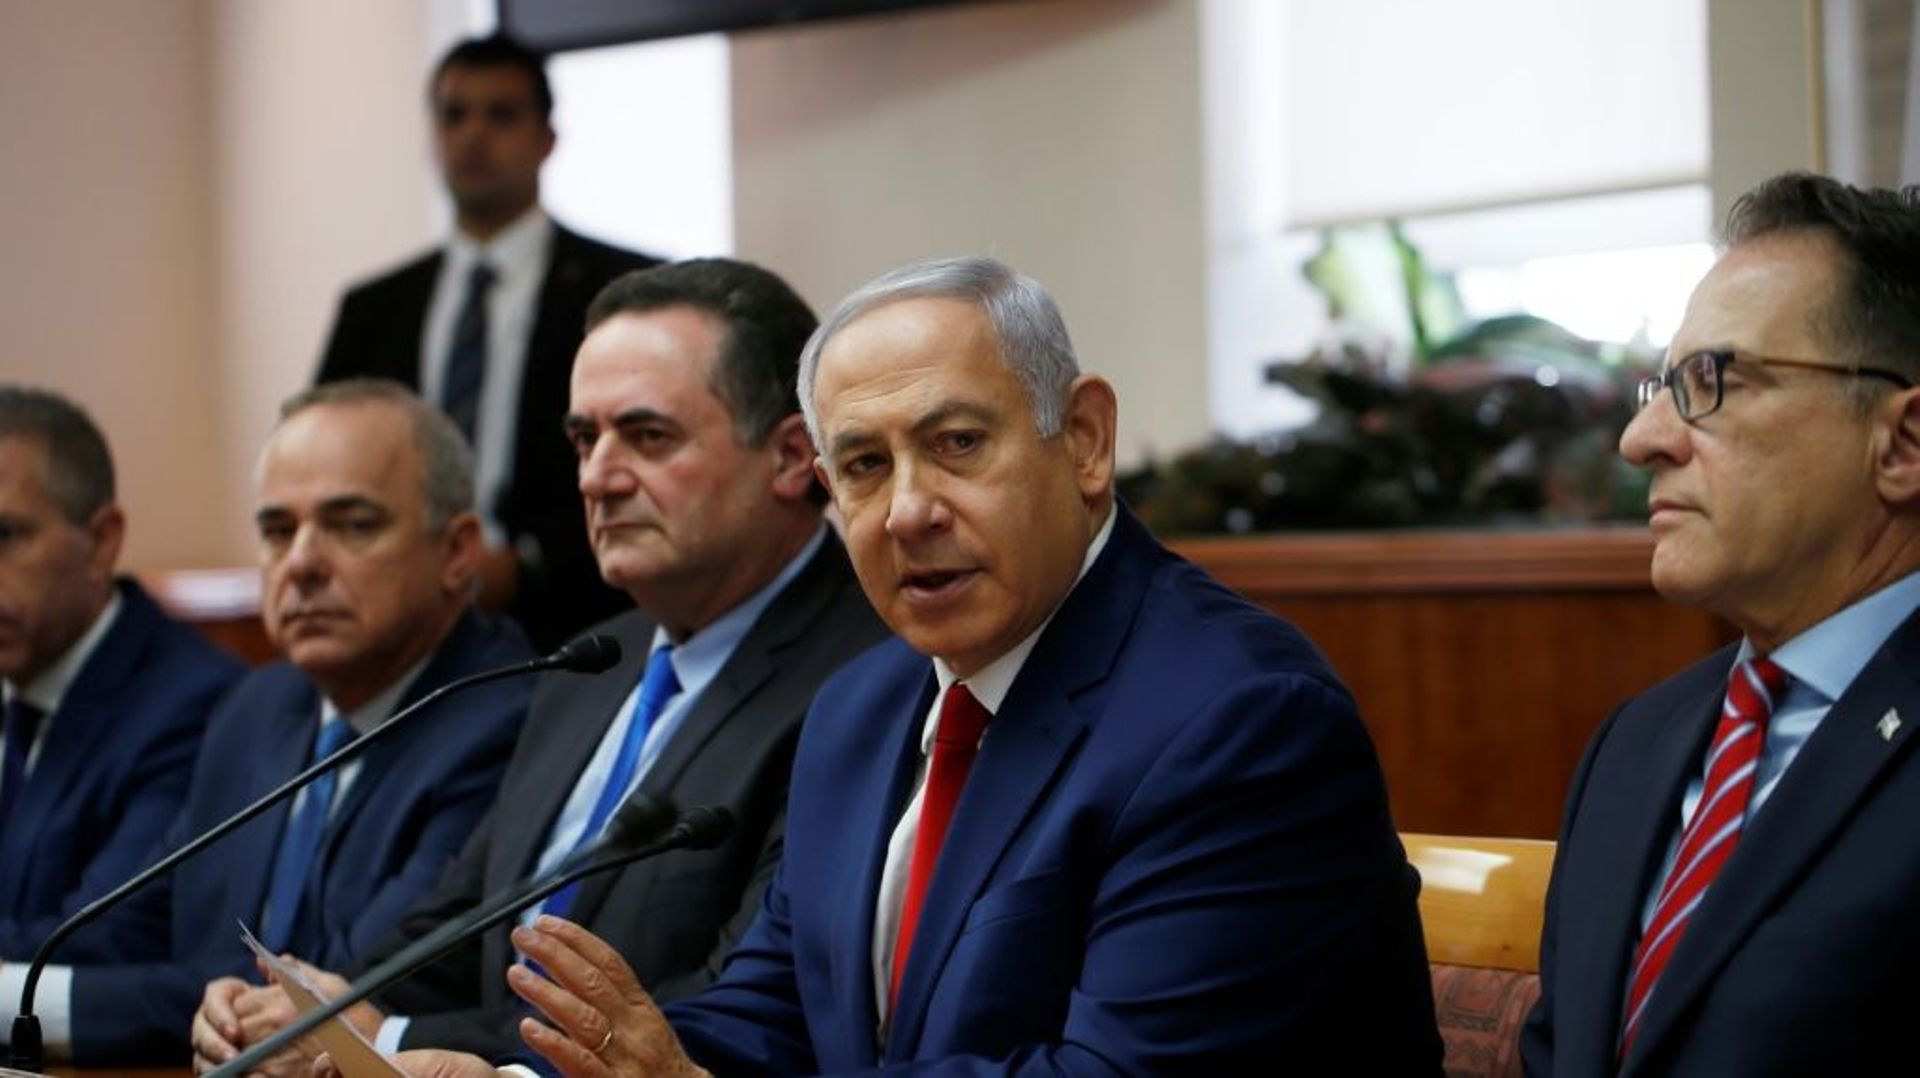 Le Premier ministre israélien Benjamin Netanyahu participant au conseil des ministres hebdomadaire le 23 décembre 2018 à Jérusalem